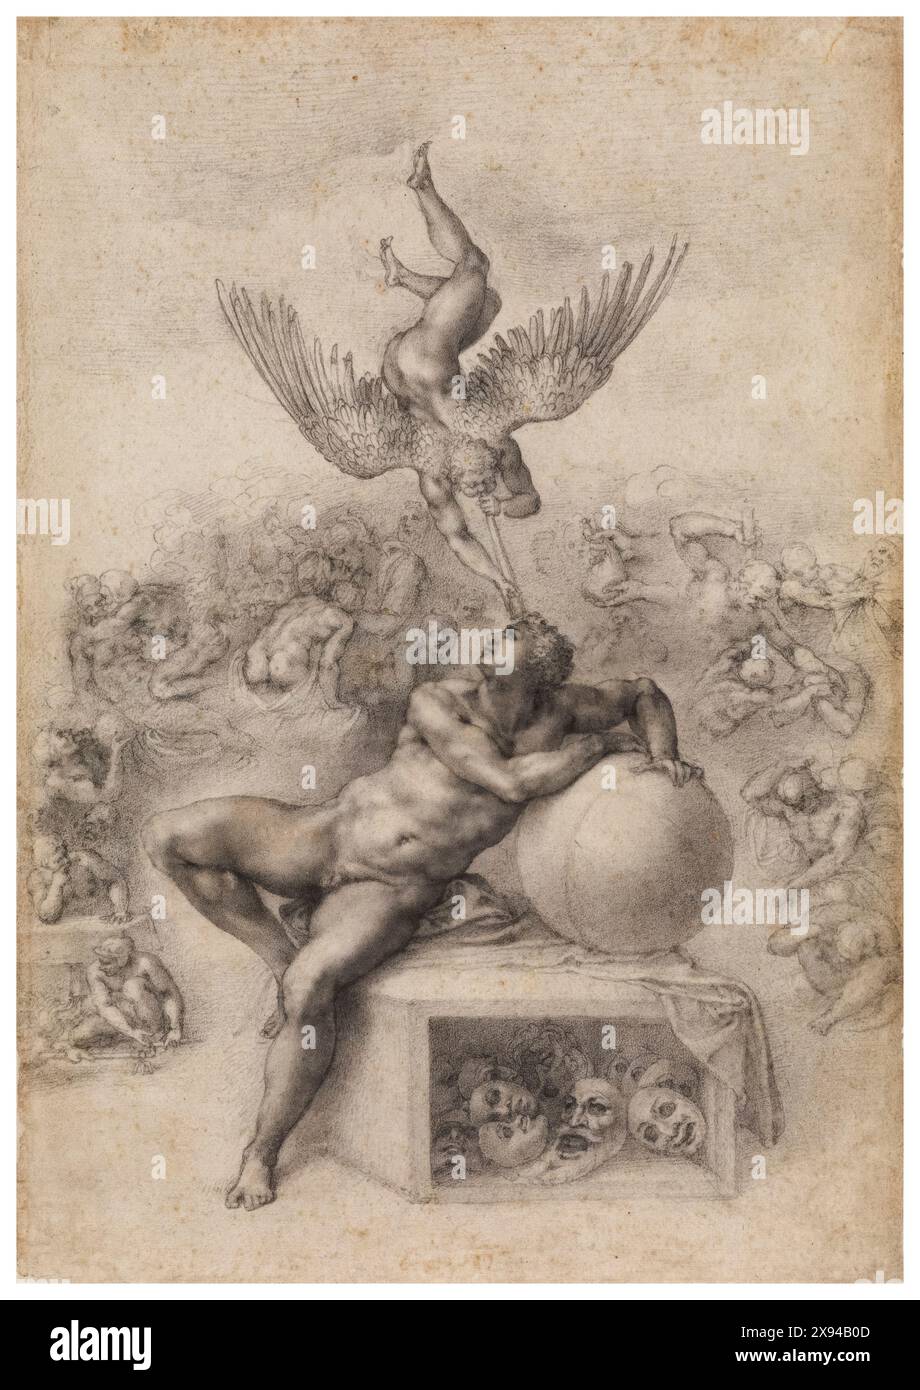 Michelangelo Buonarroti, der Traum, Zeichnung in Kreide auf Papier, um 1533 Stockfoto